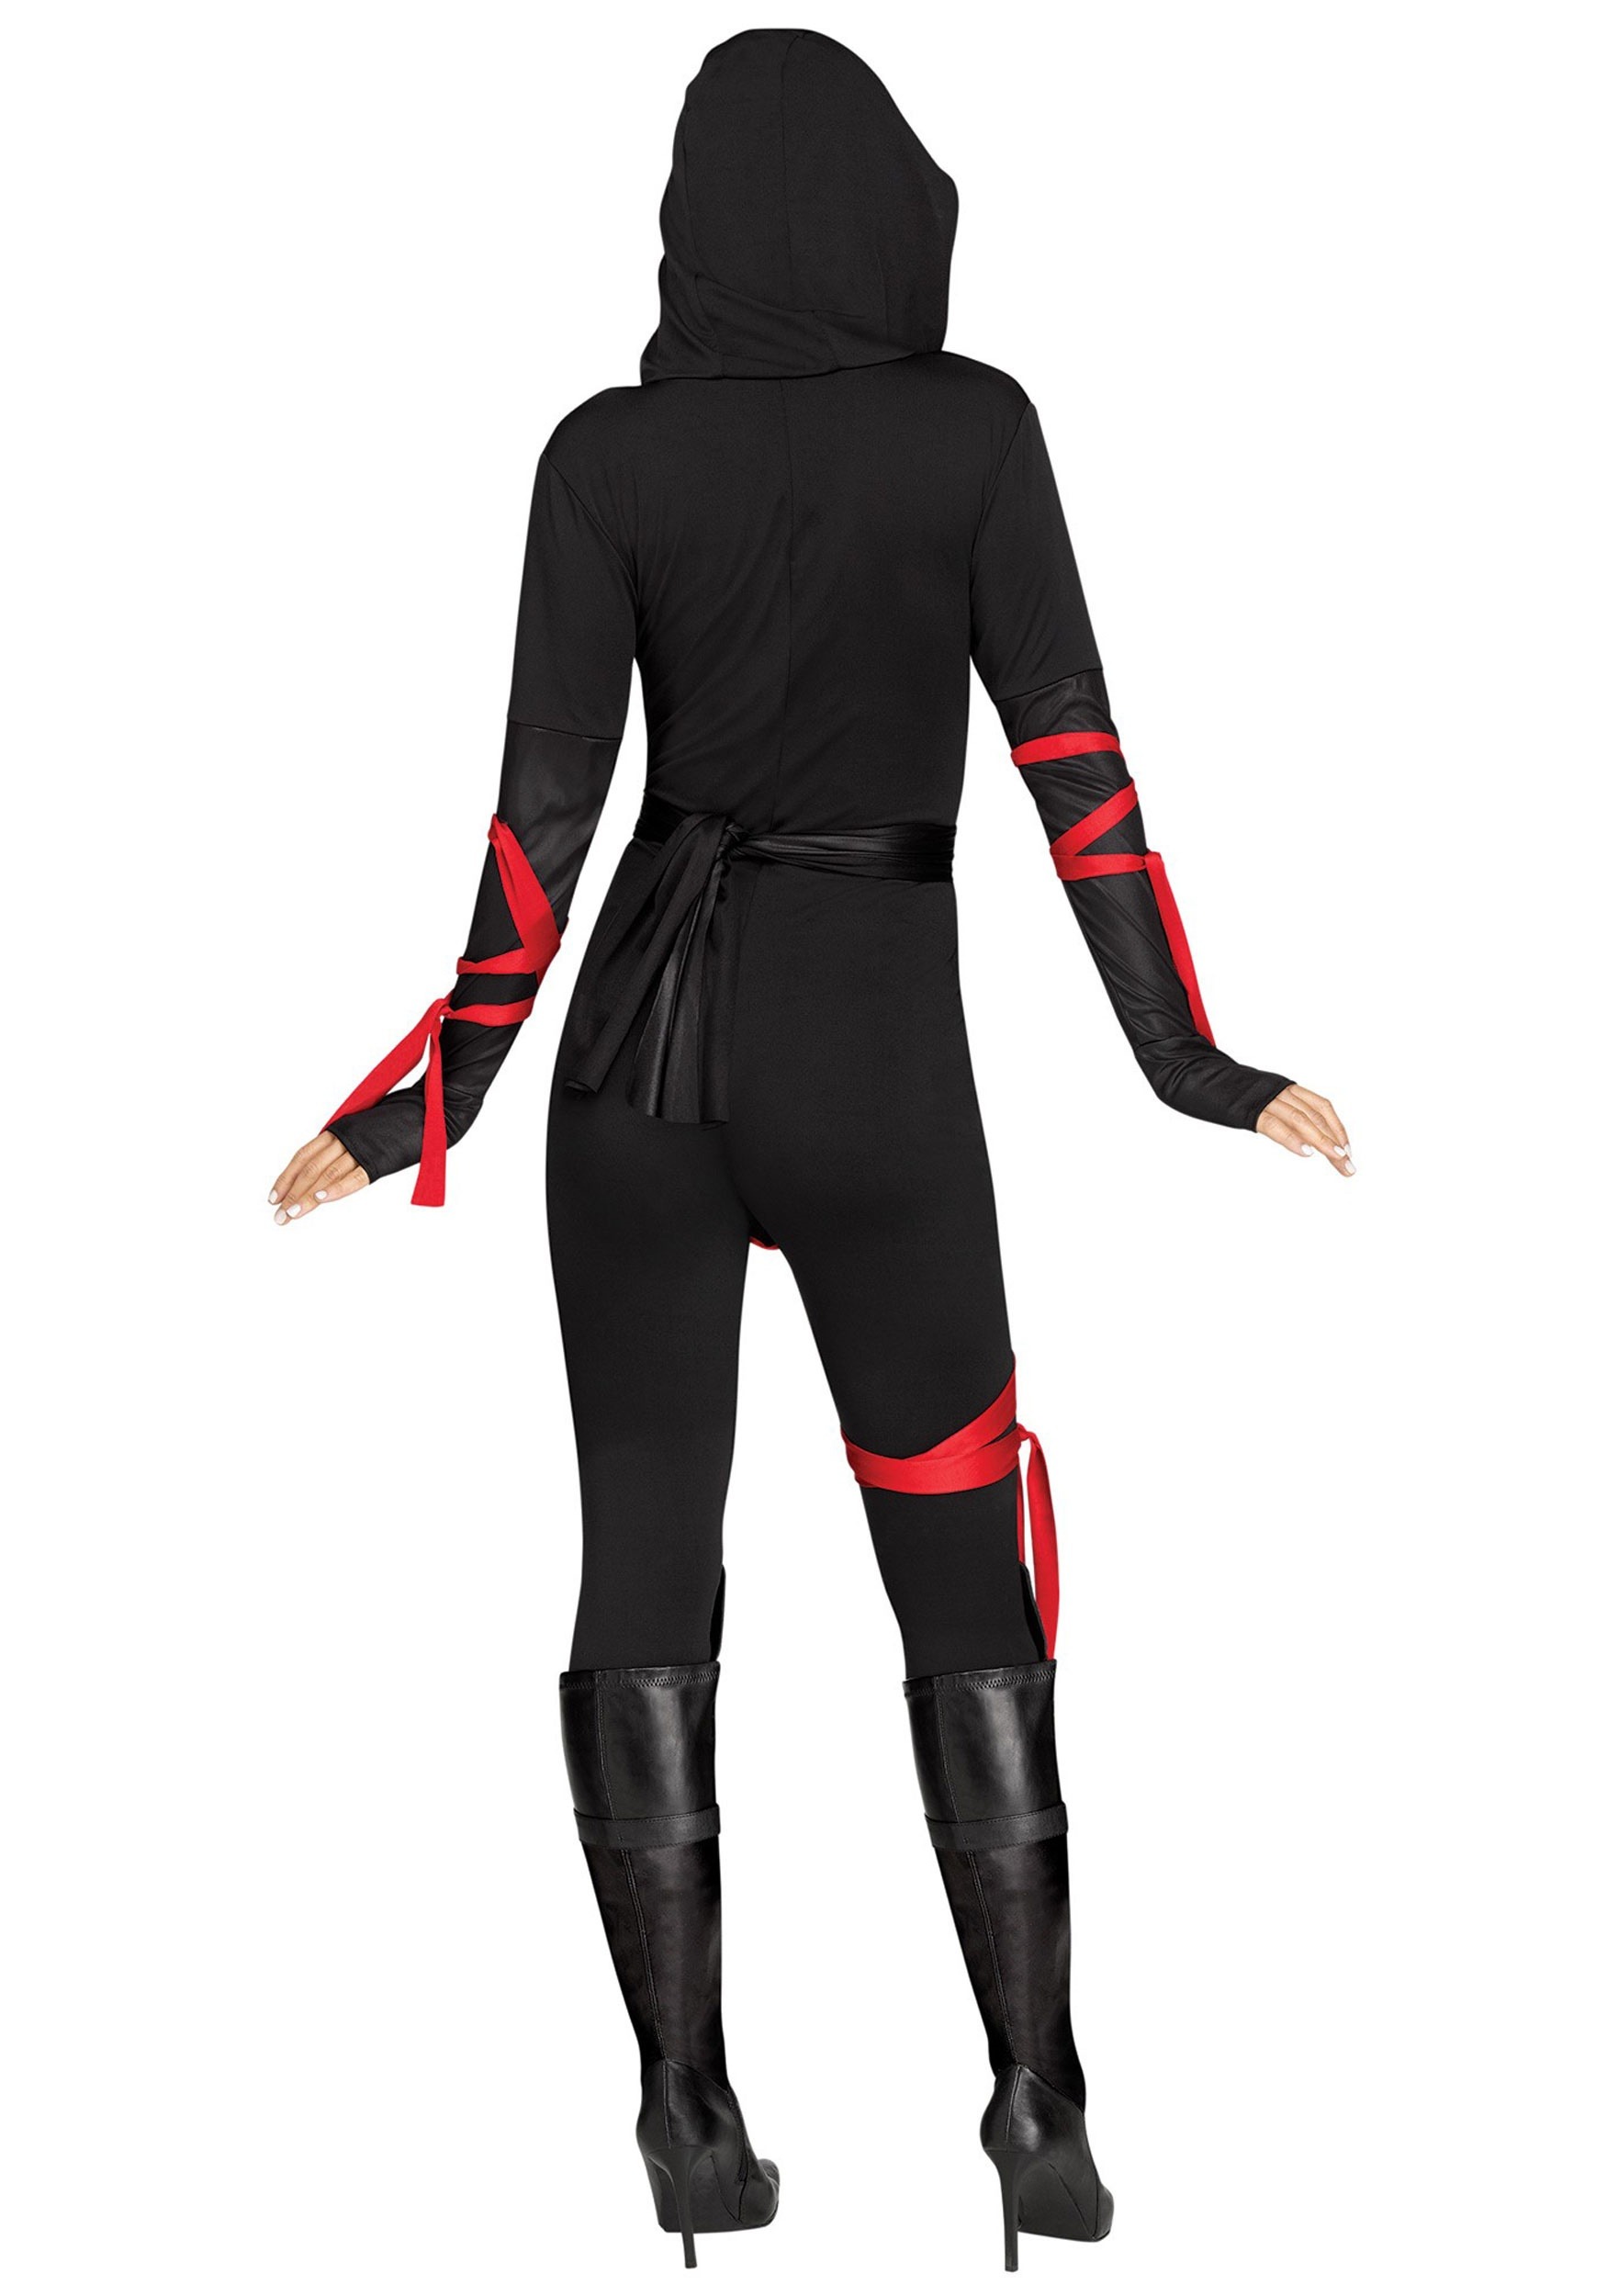 Sexy Ninja Warrior Women's Costume